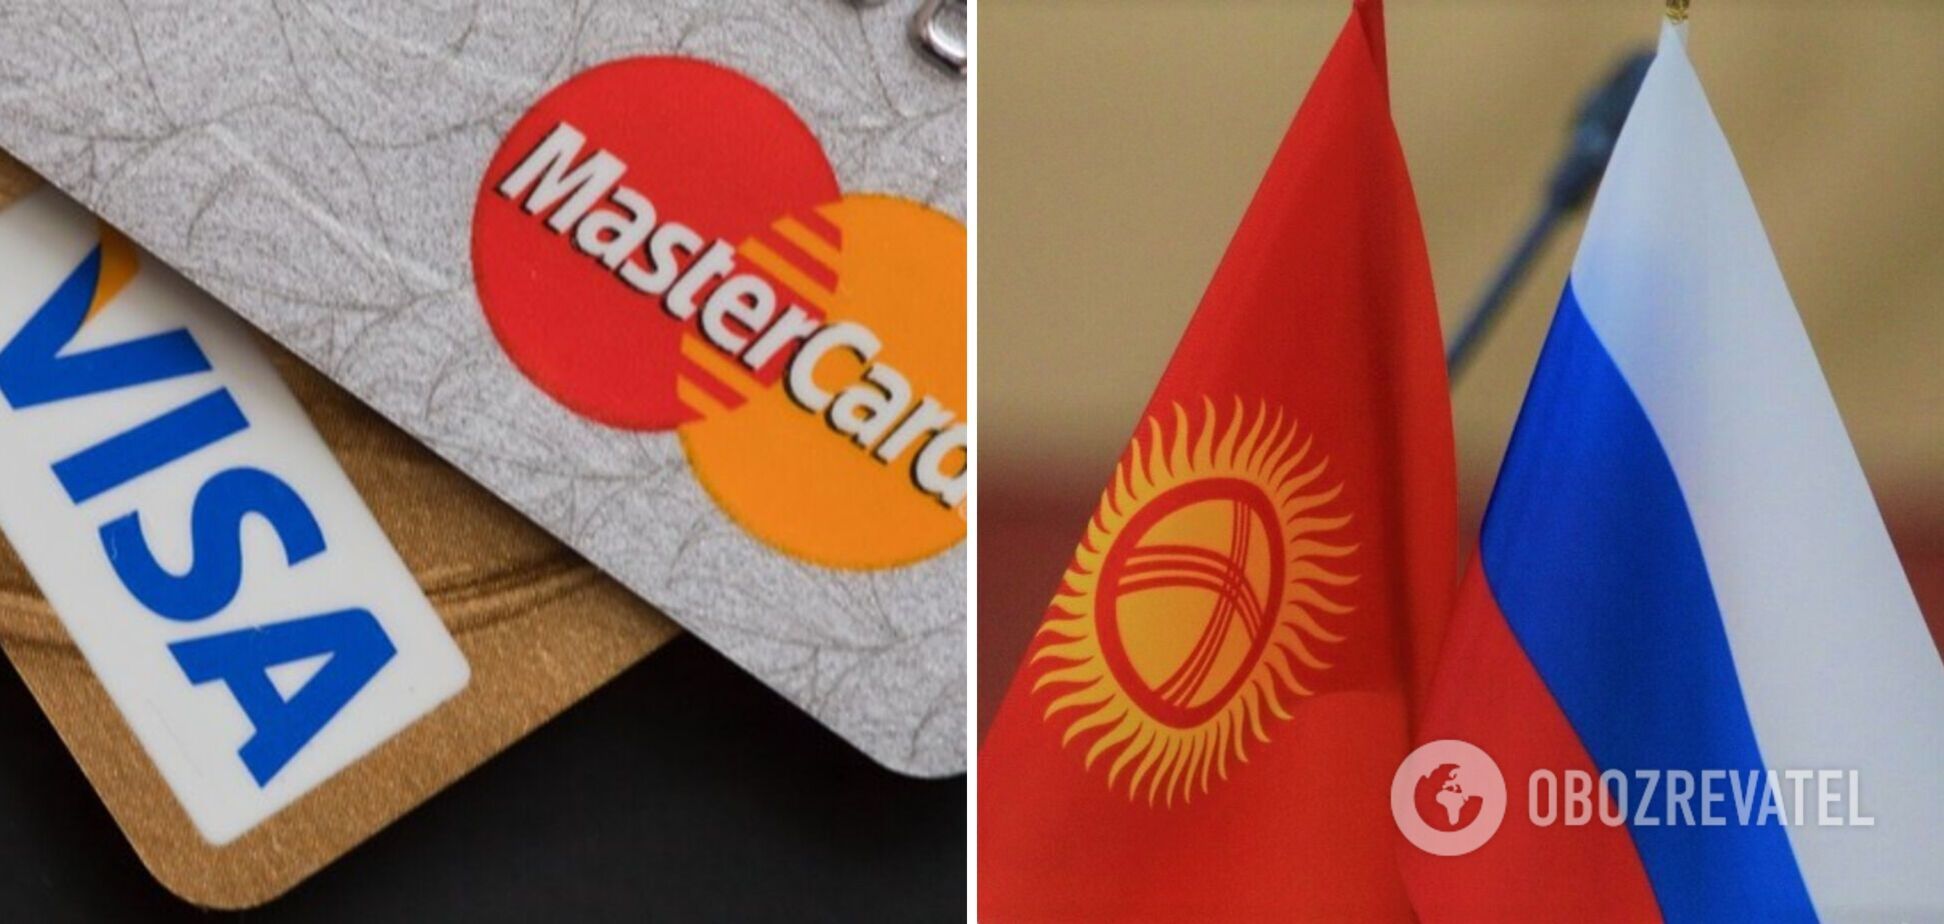 Кыргызстан помогает россиянам обходить санкции